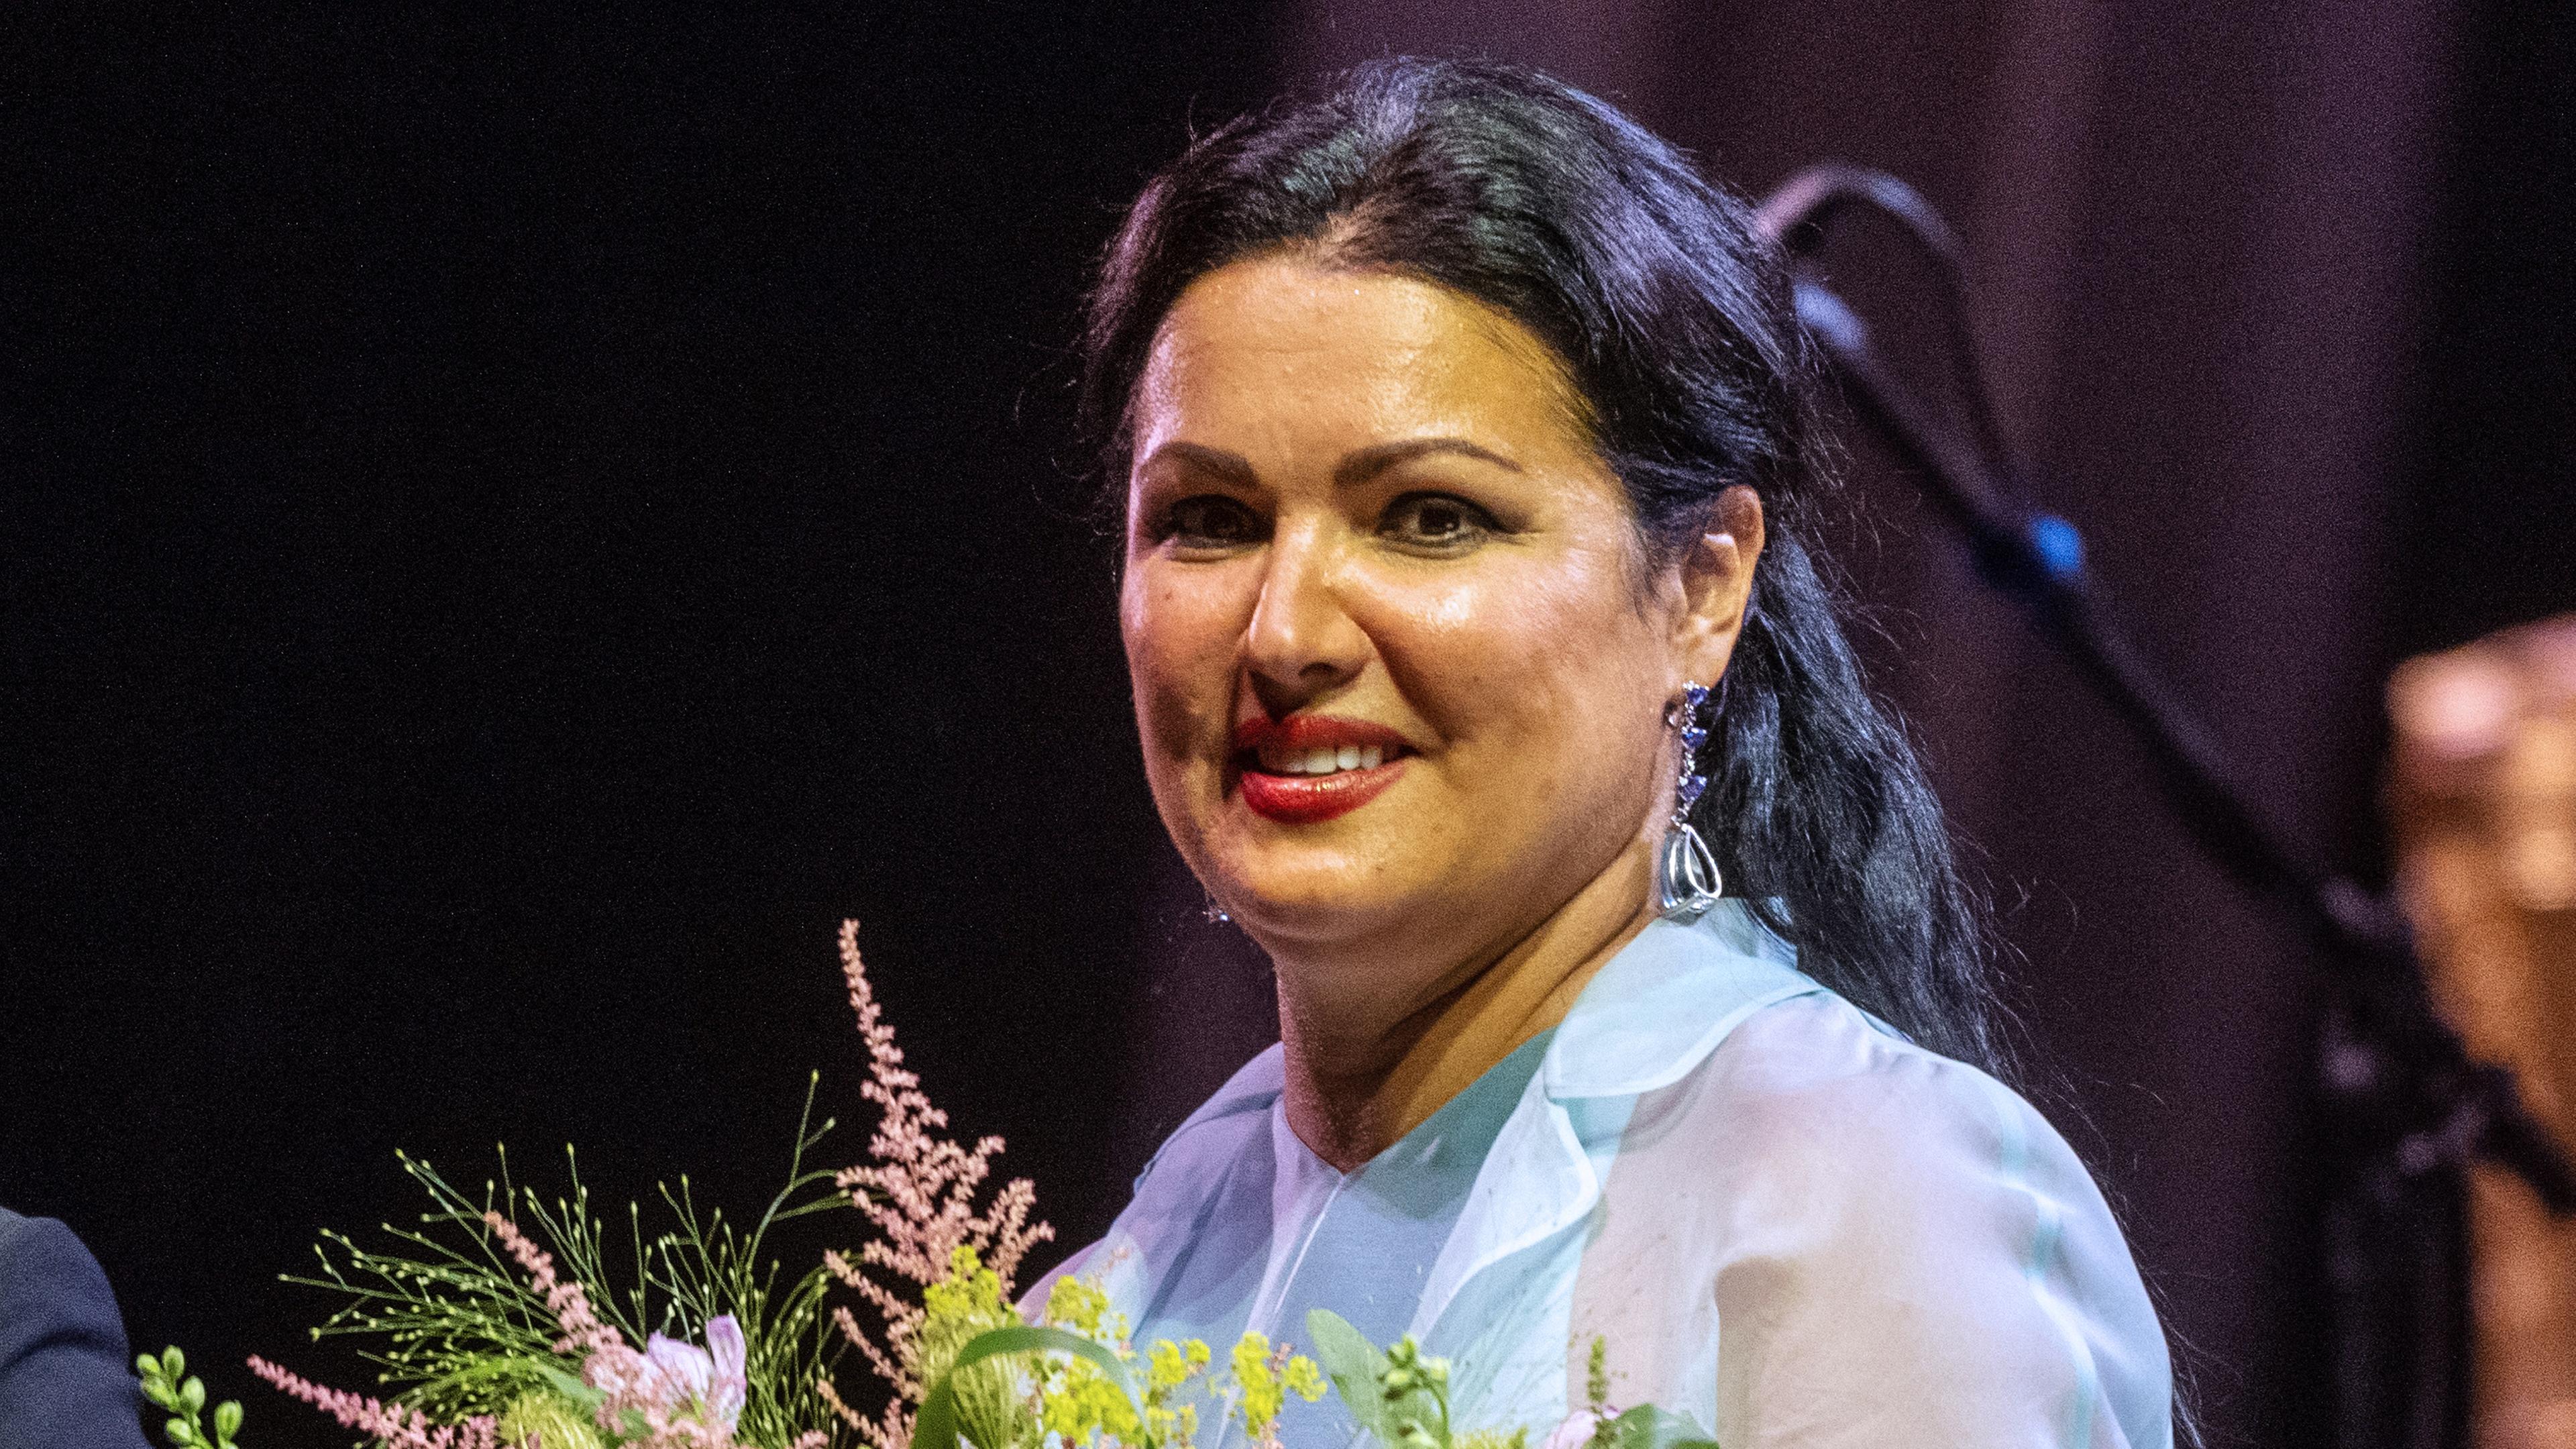 Die Opernsängerin Anna Netrebko mit einem Blumenstrauß auf der Bühne.